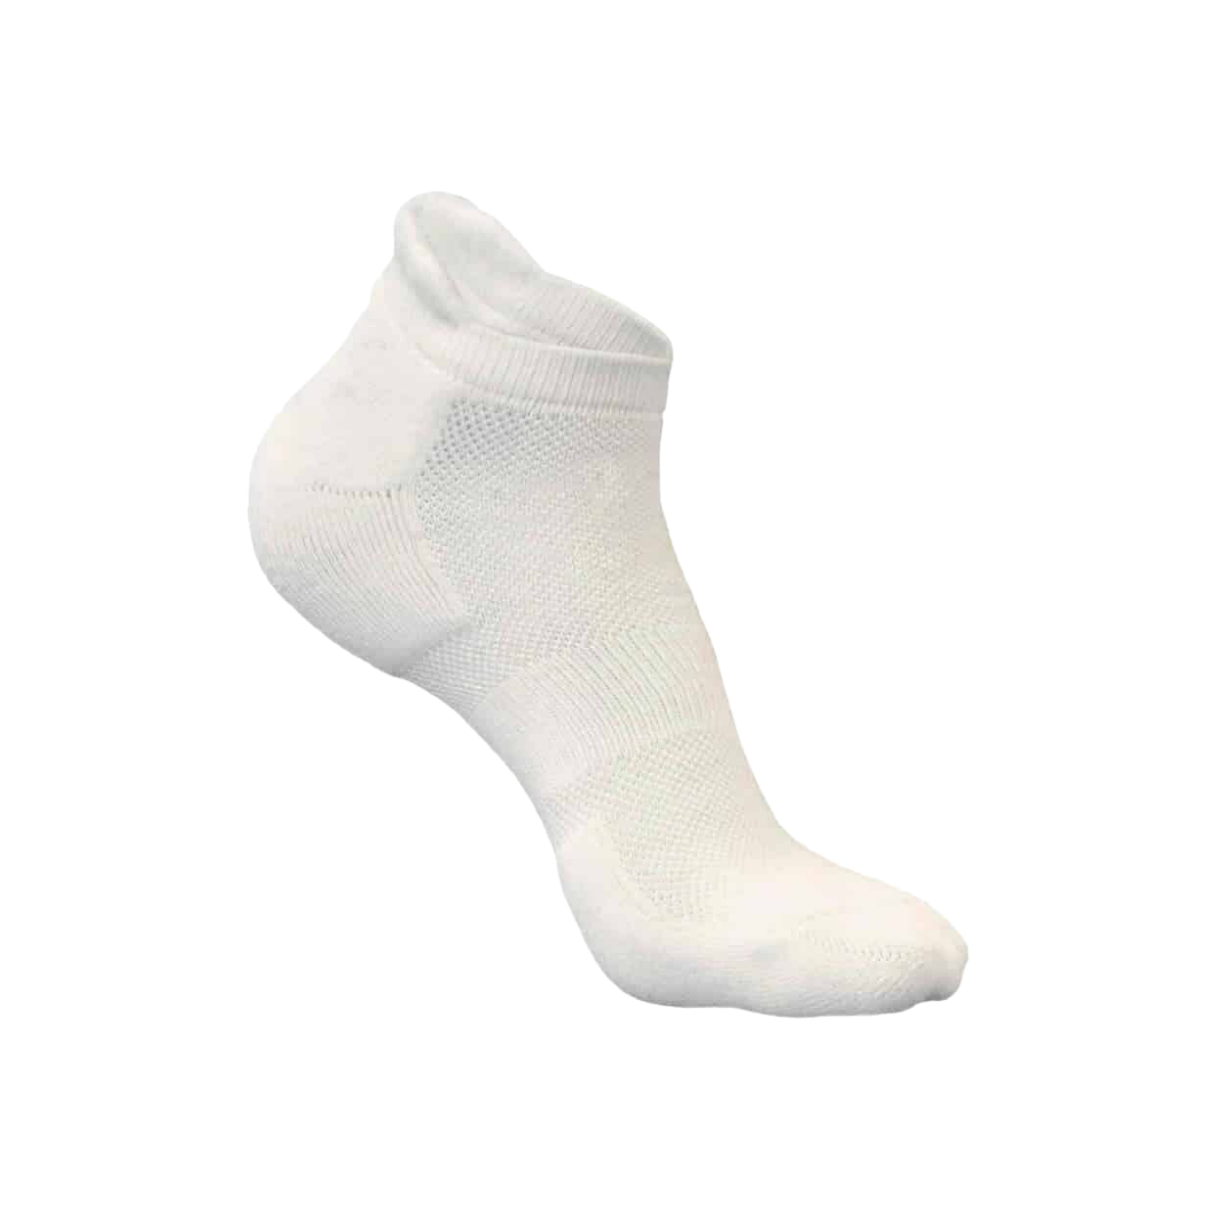 
                  
                    Natsbyte Bamboo Fiber Unisex Ankle Socks (odour Free)-White
                  
                